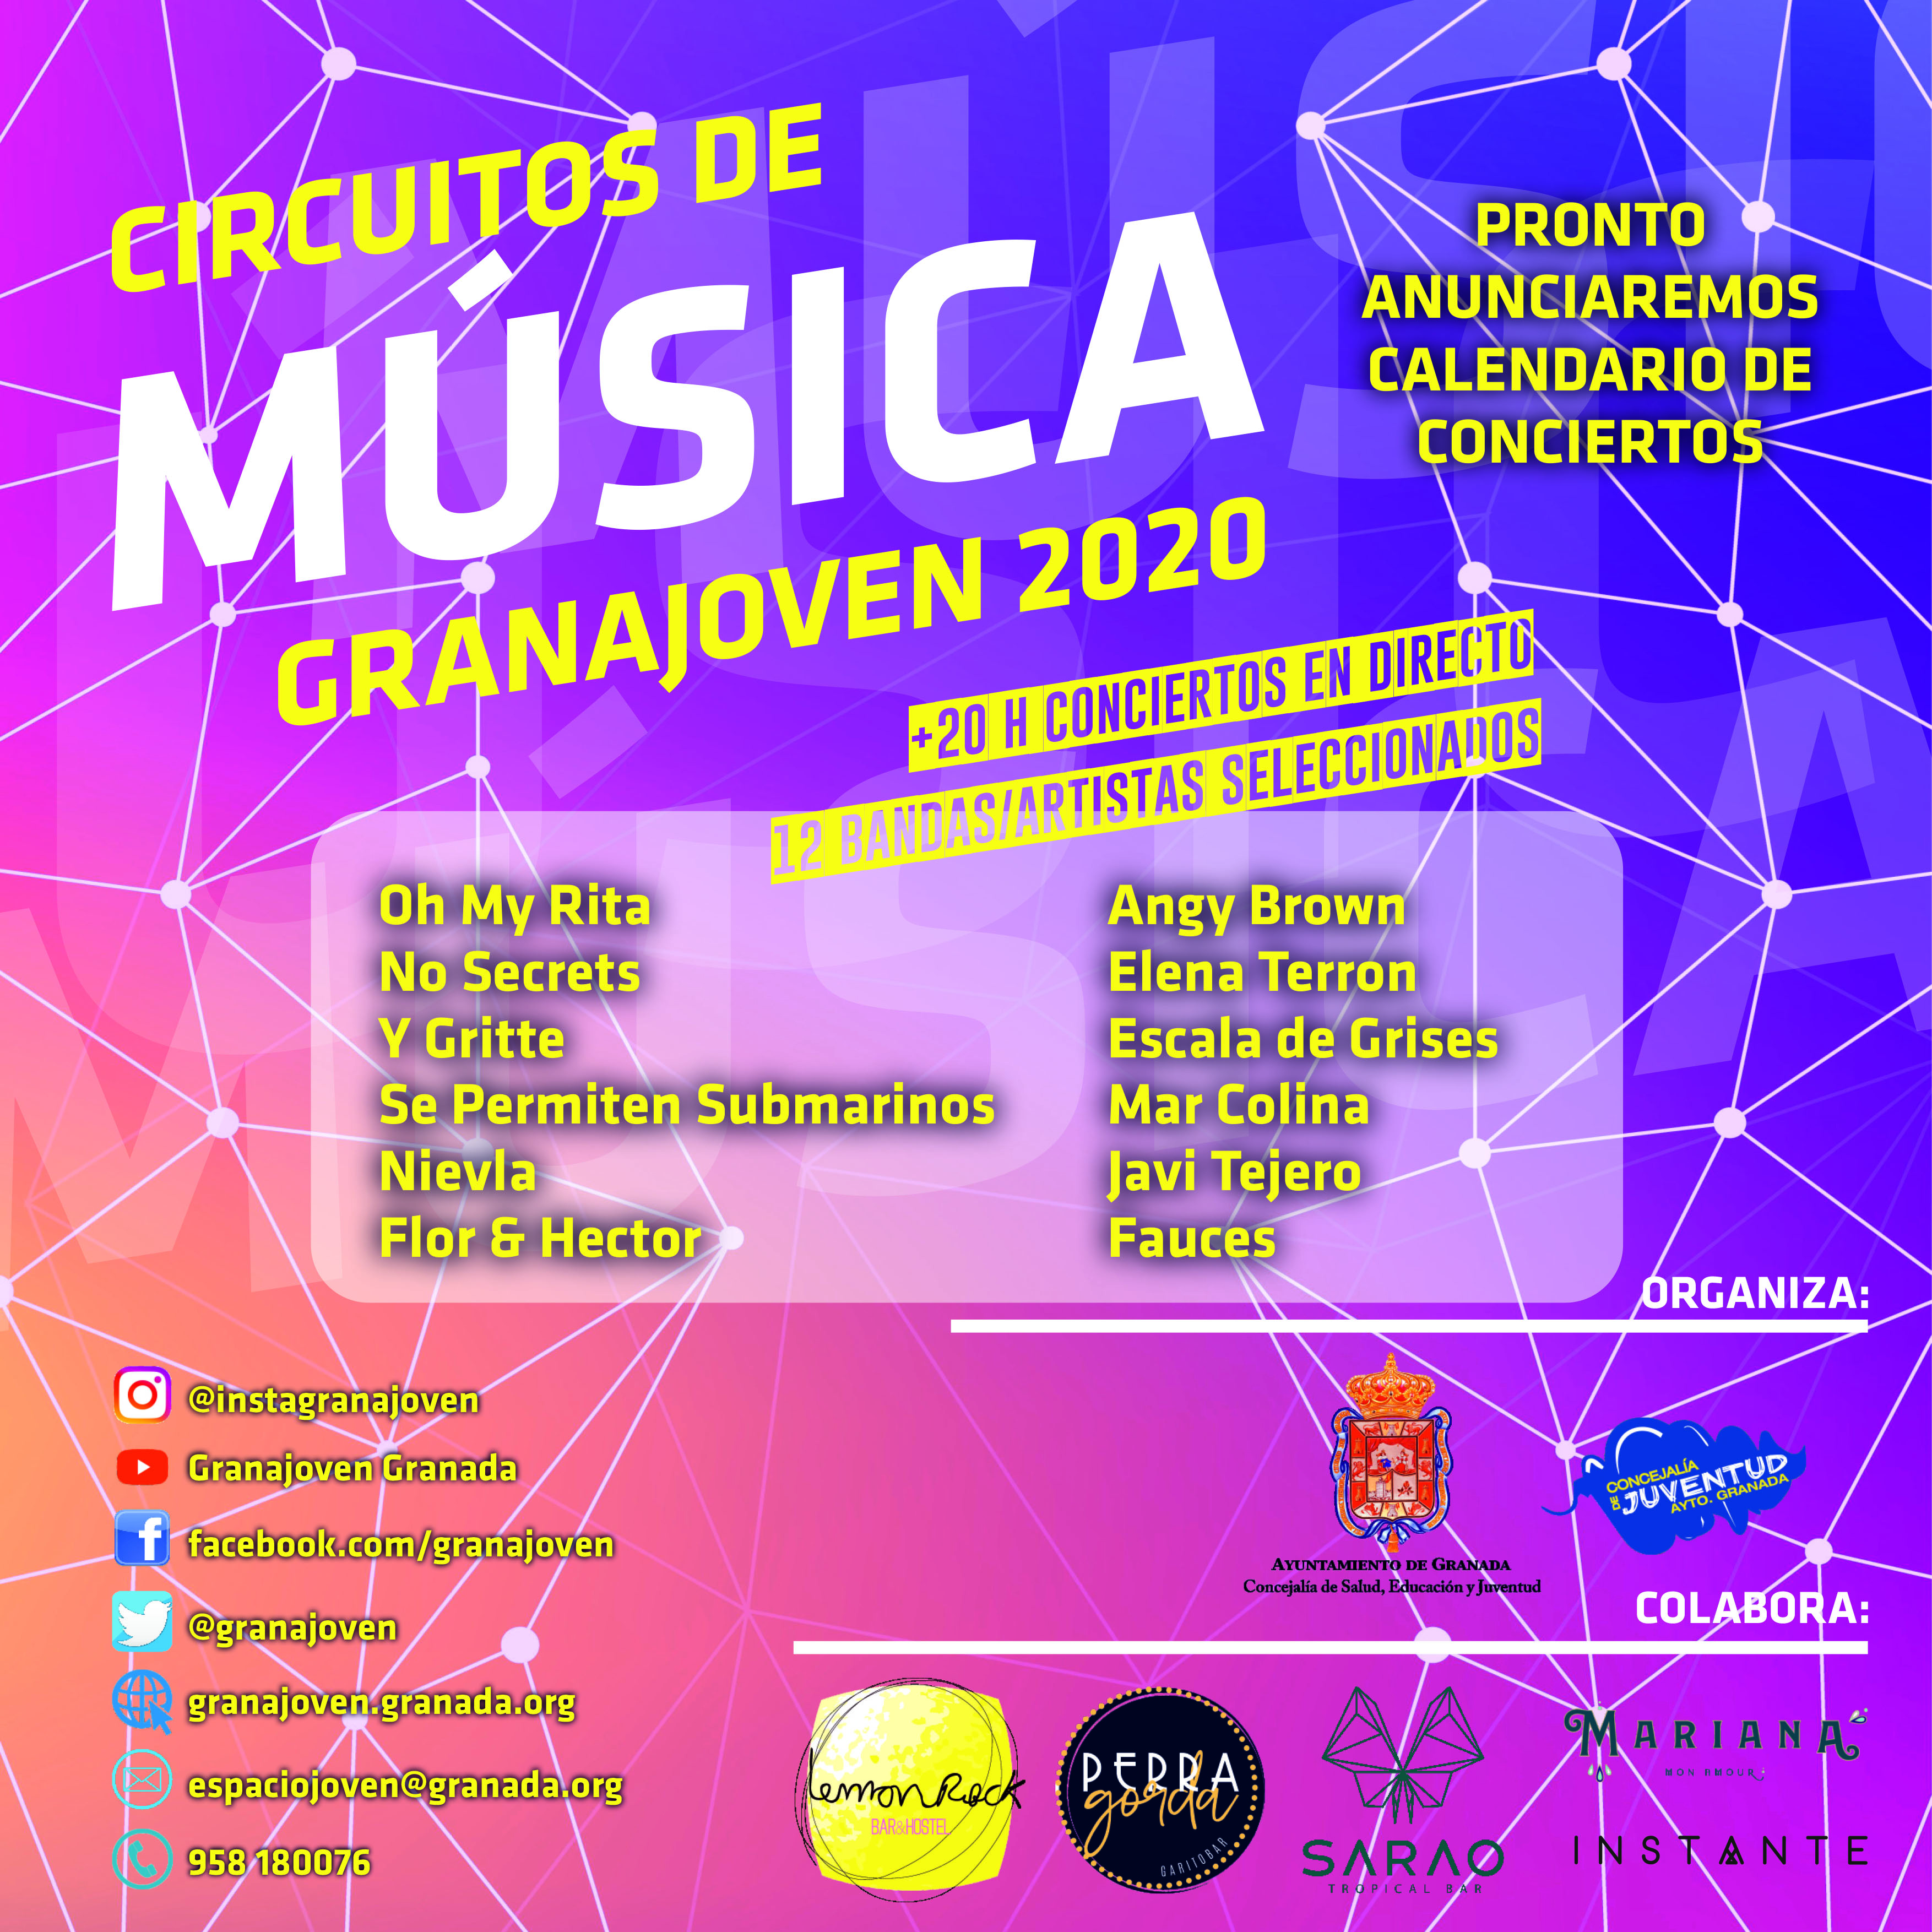 Bandas y artistas seleccionados para los Conciertos “Circuitos de Msica Granajoven 2020”